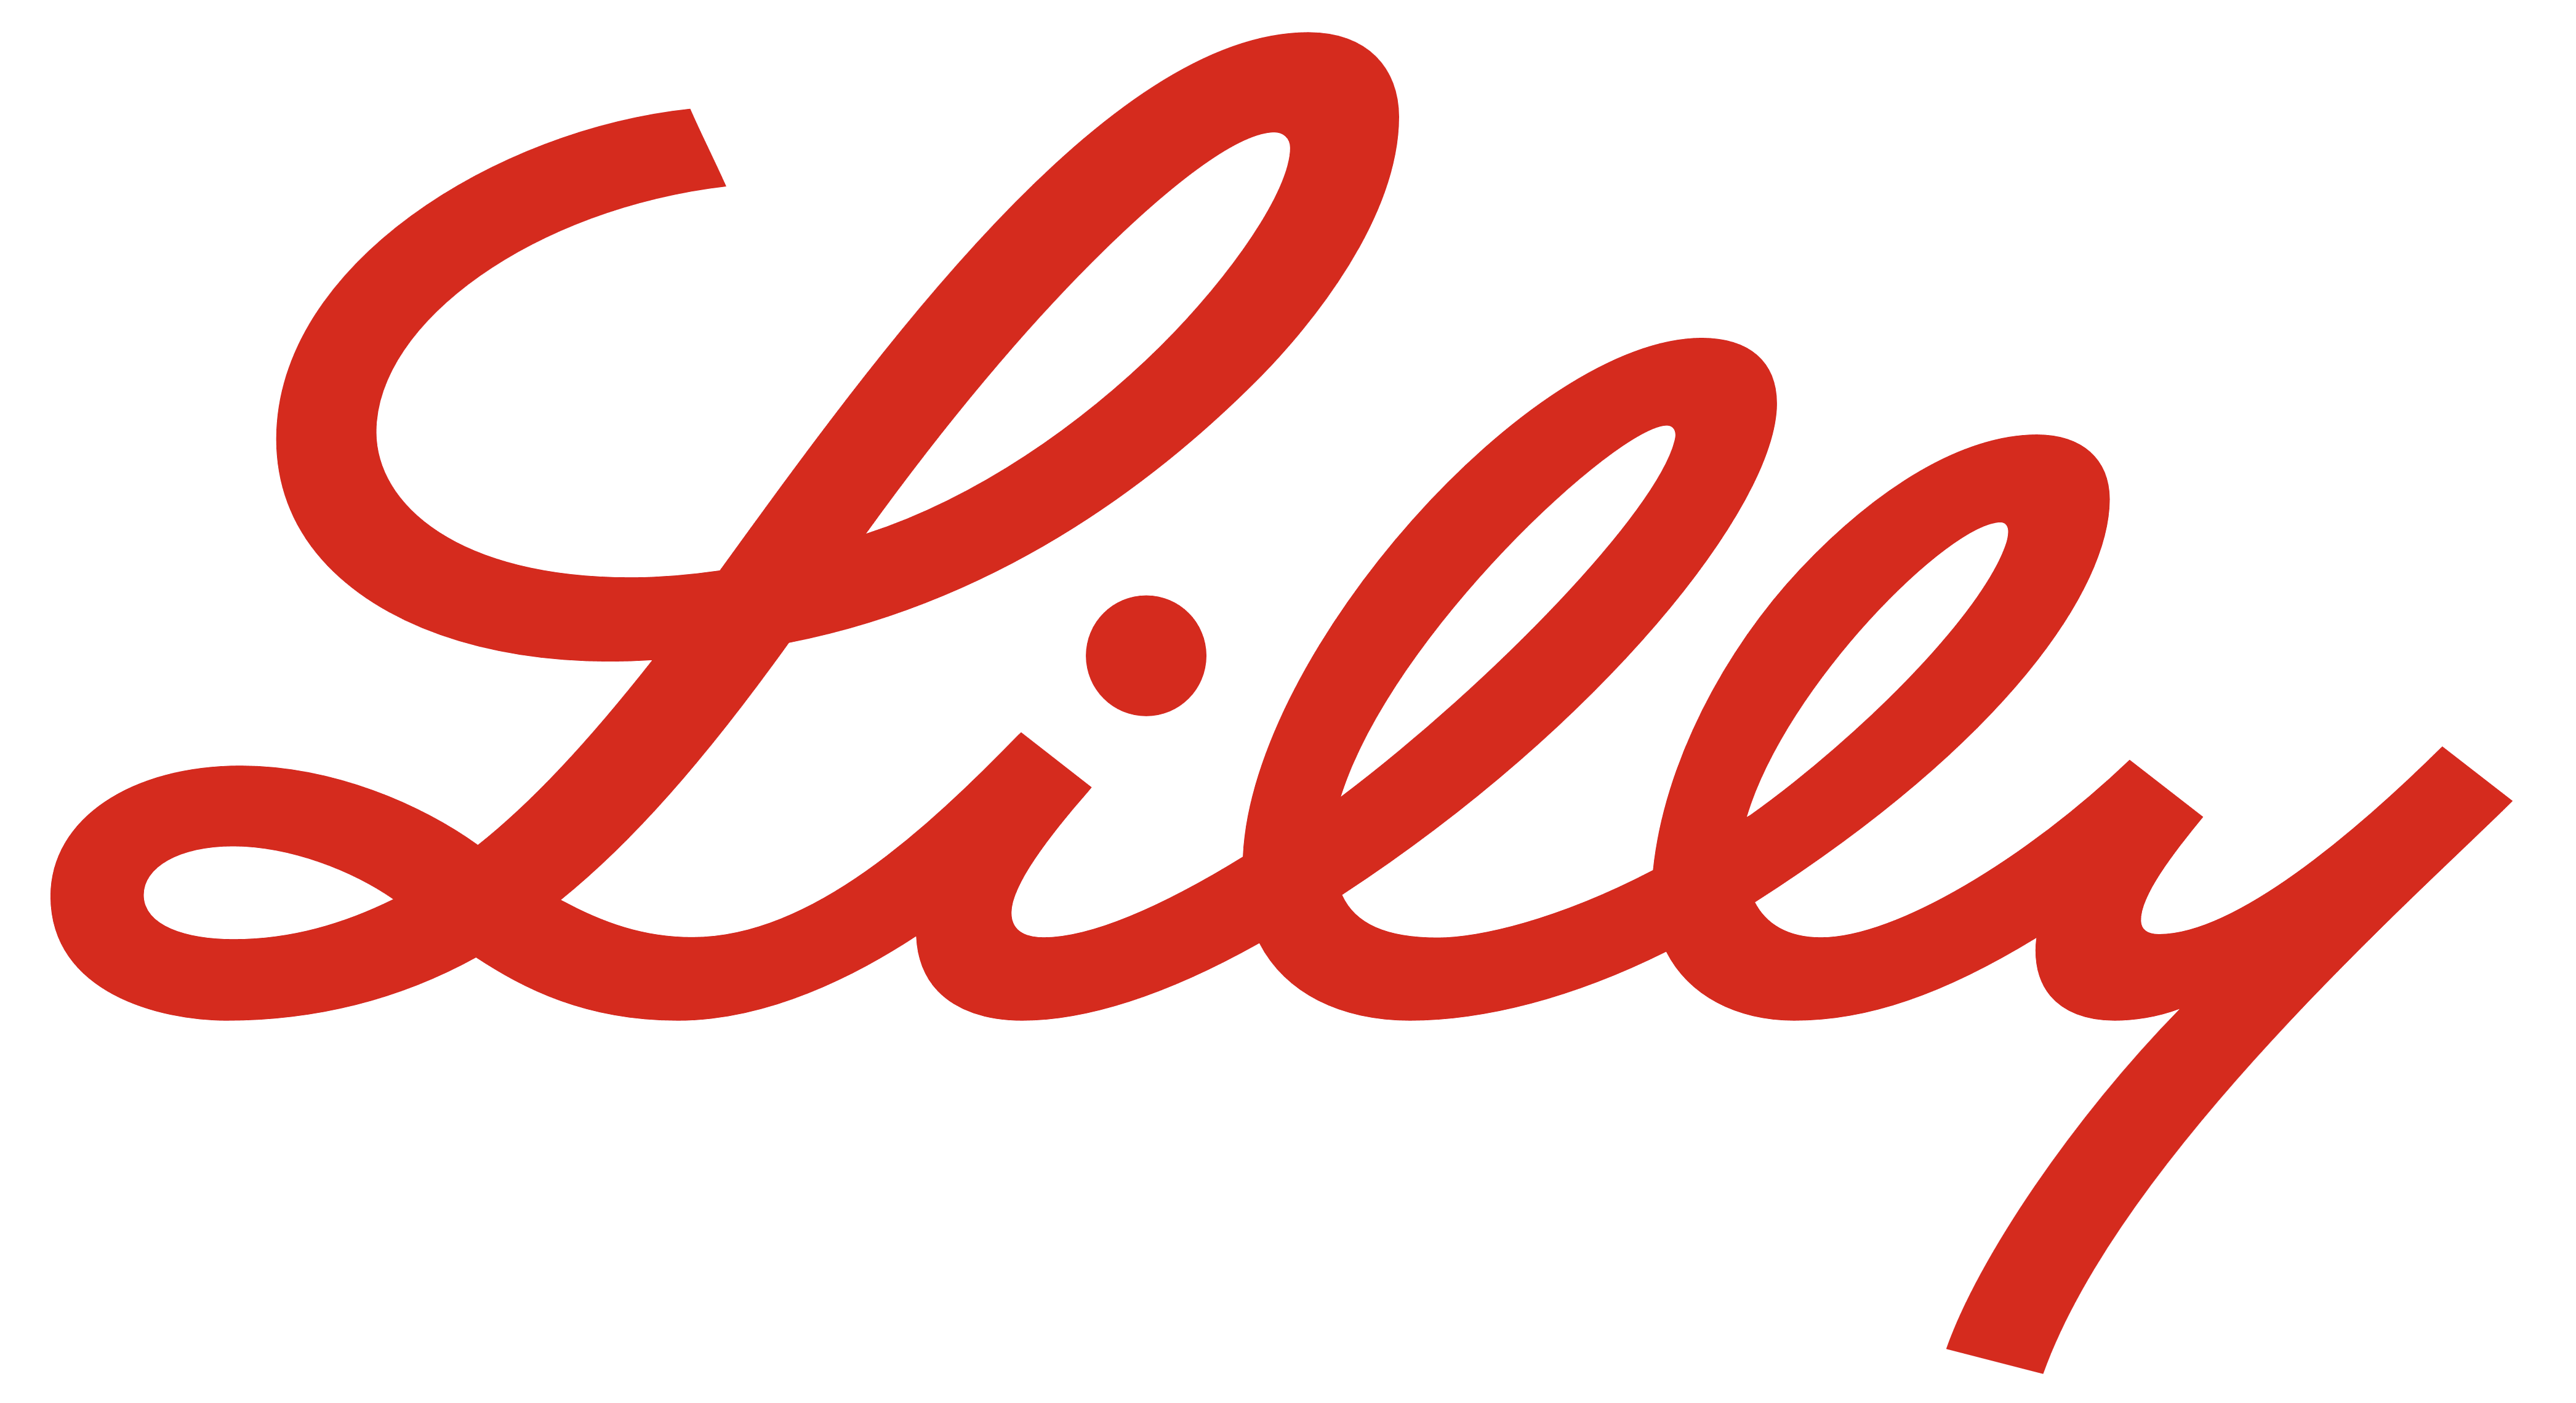 Eli Lilly logo